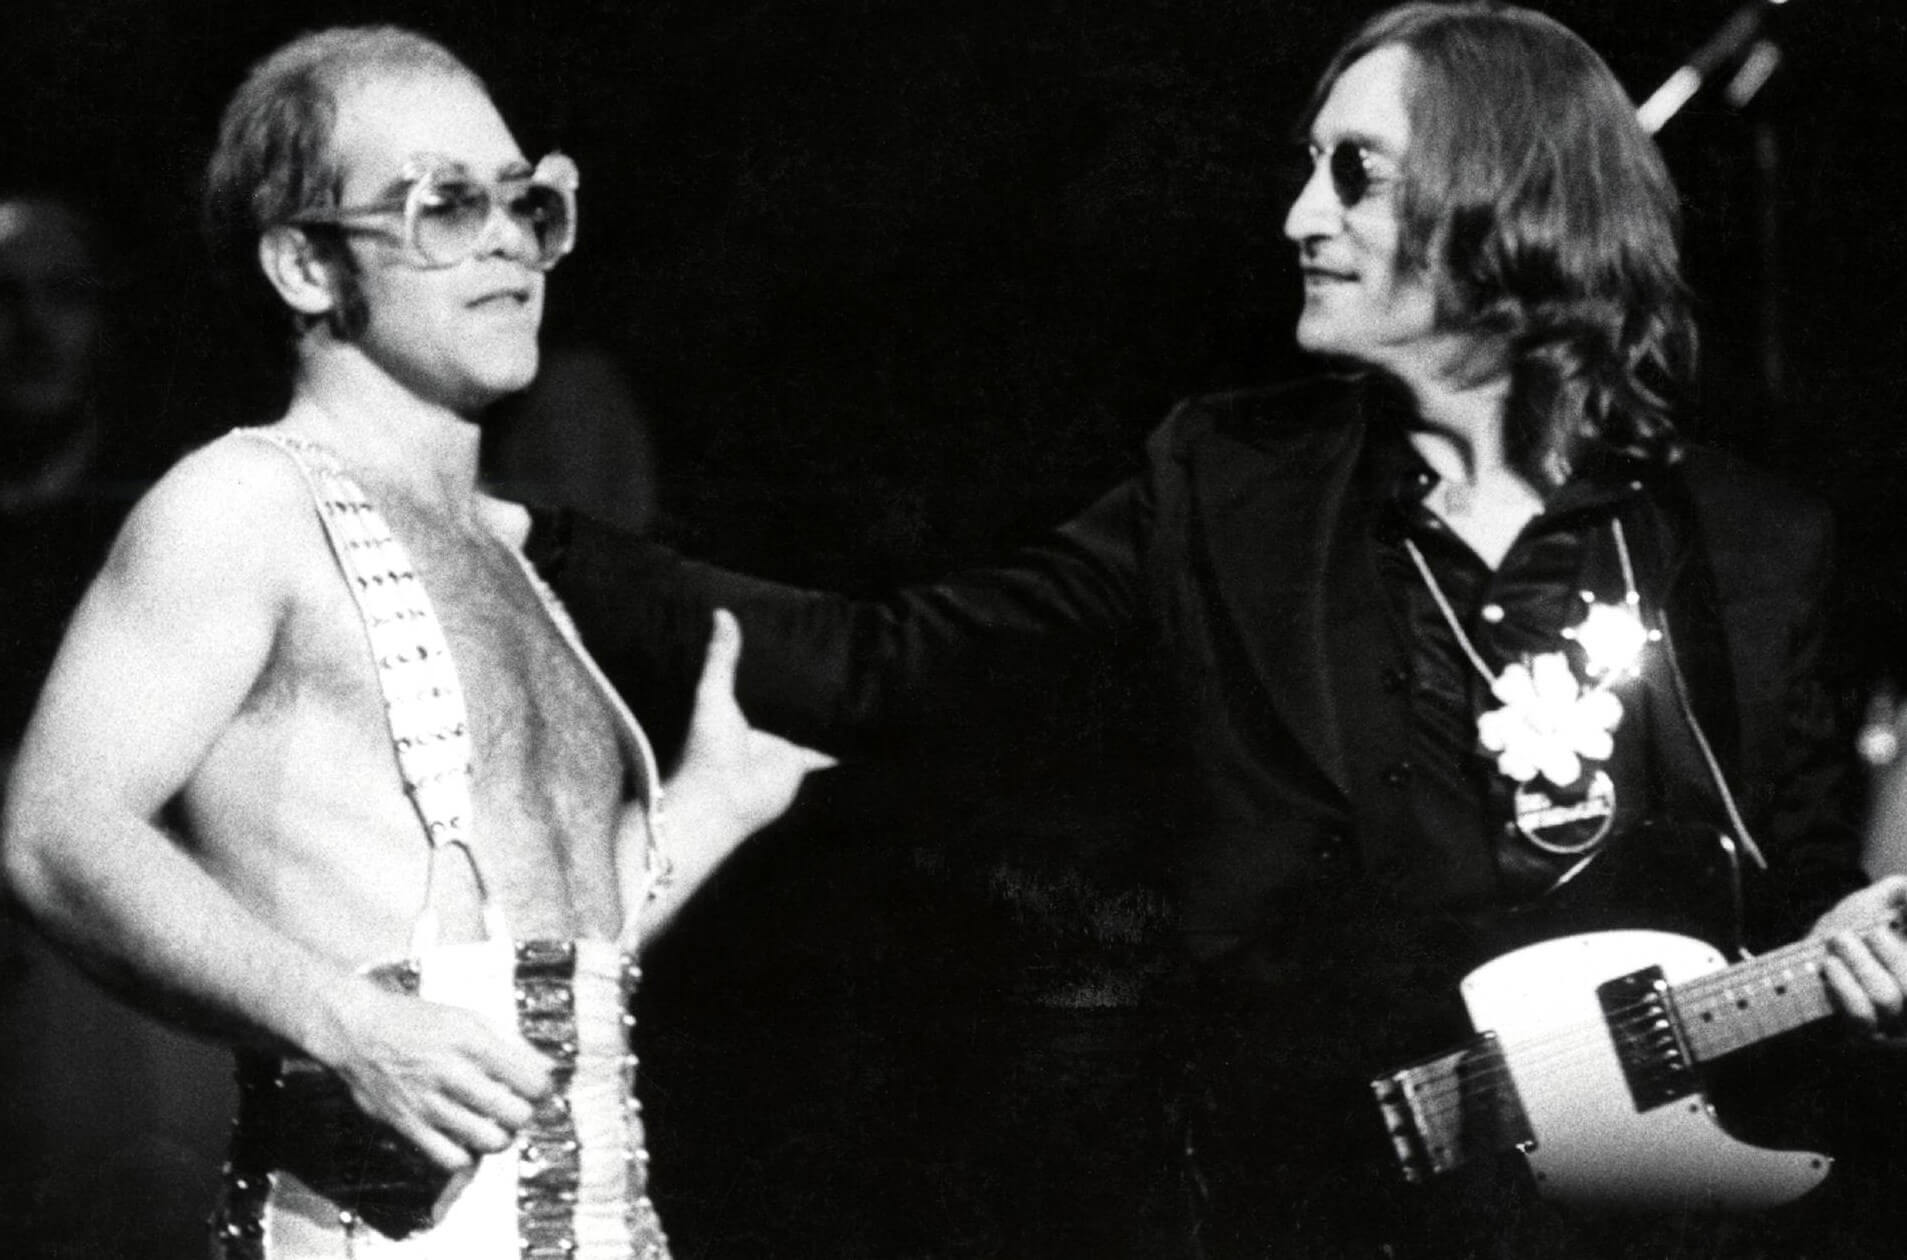 Elton John and John Lennon in black-and-white